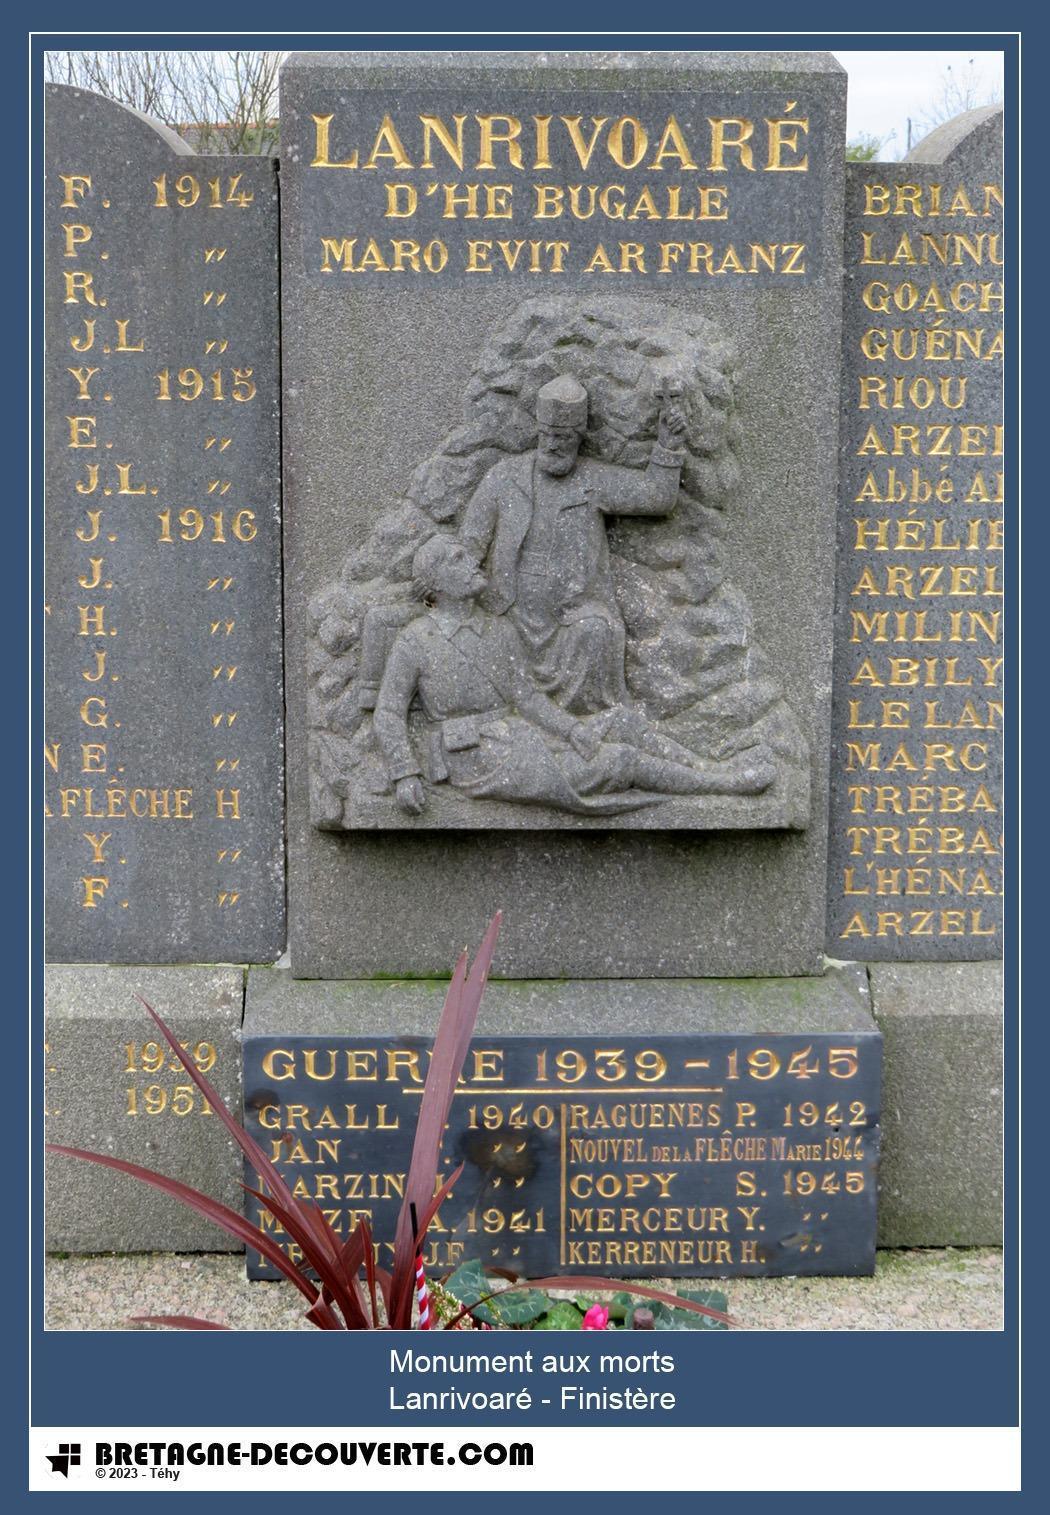 Les noms gravés sur le monument aux morts de Lanrivoaré